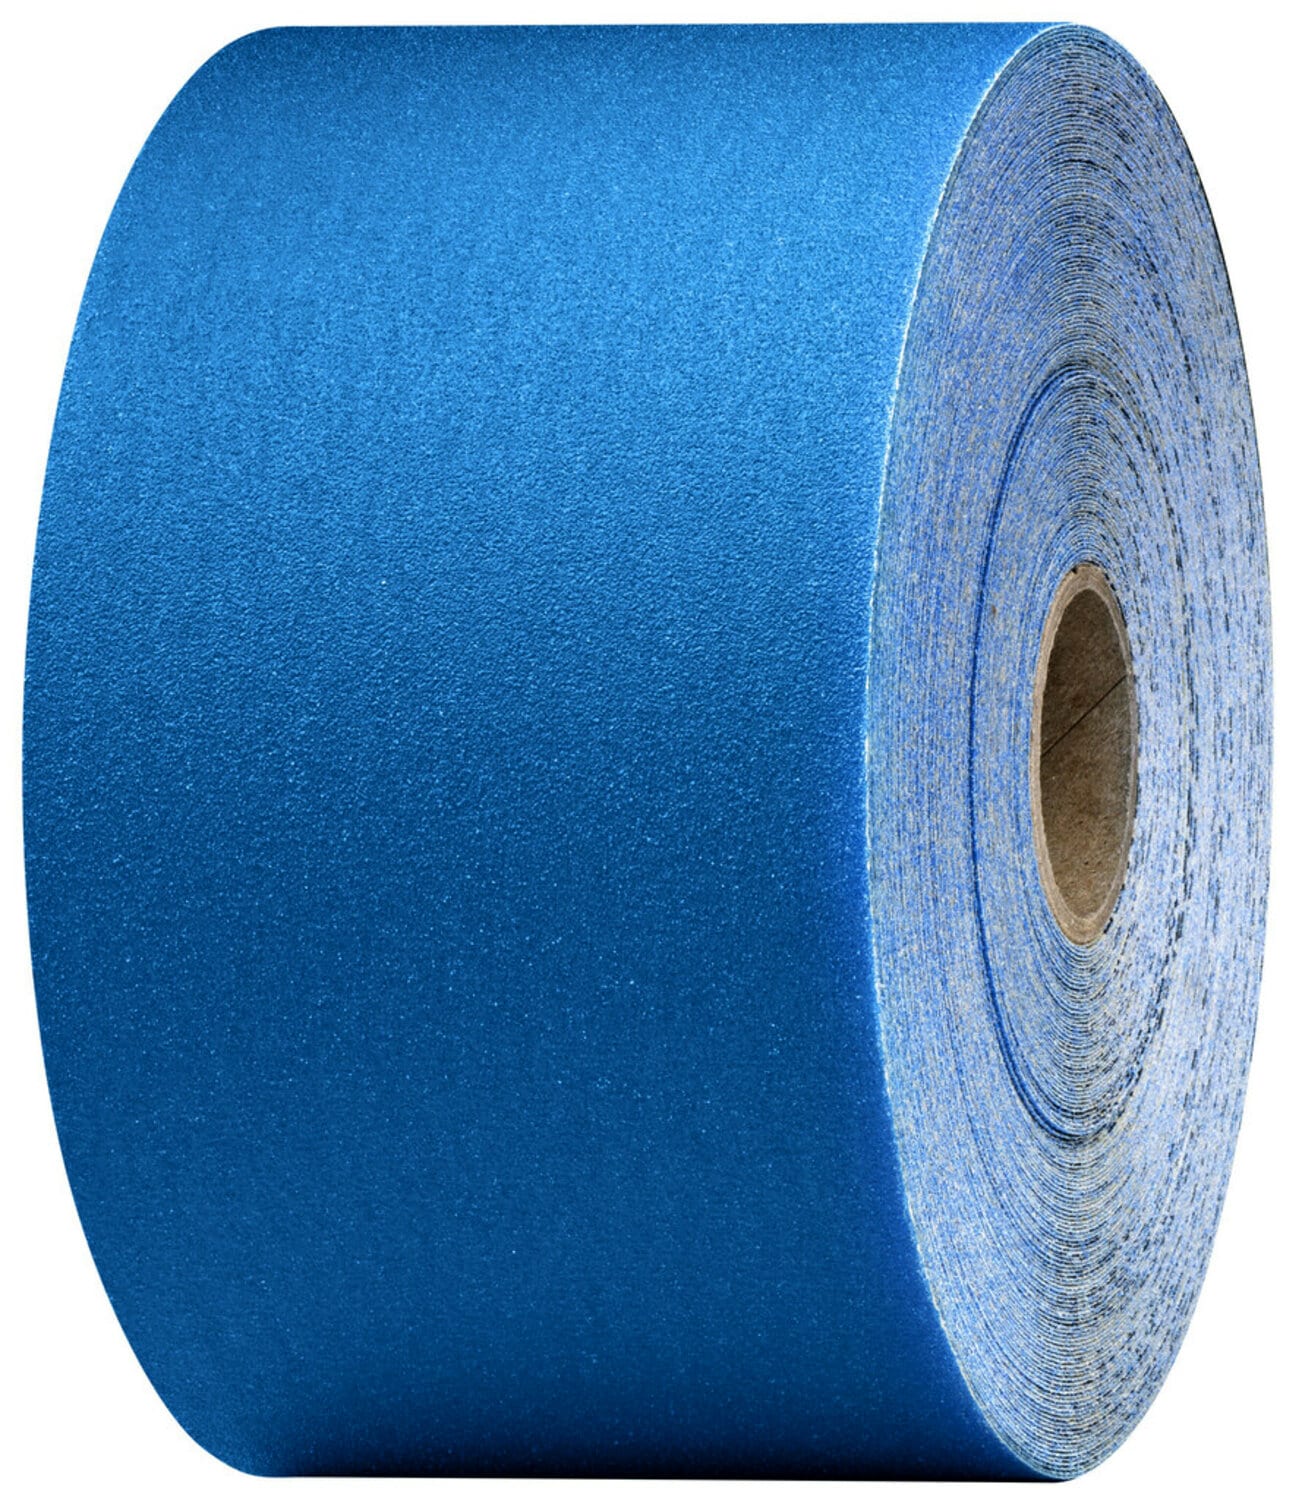 7100098208 - 3M Stikit Blue Abrasive Sheet Roll, 36219, 120, 2-3/4 in x 30 yd, 5
rolls per case